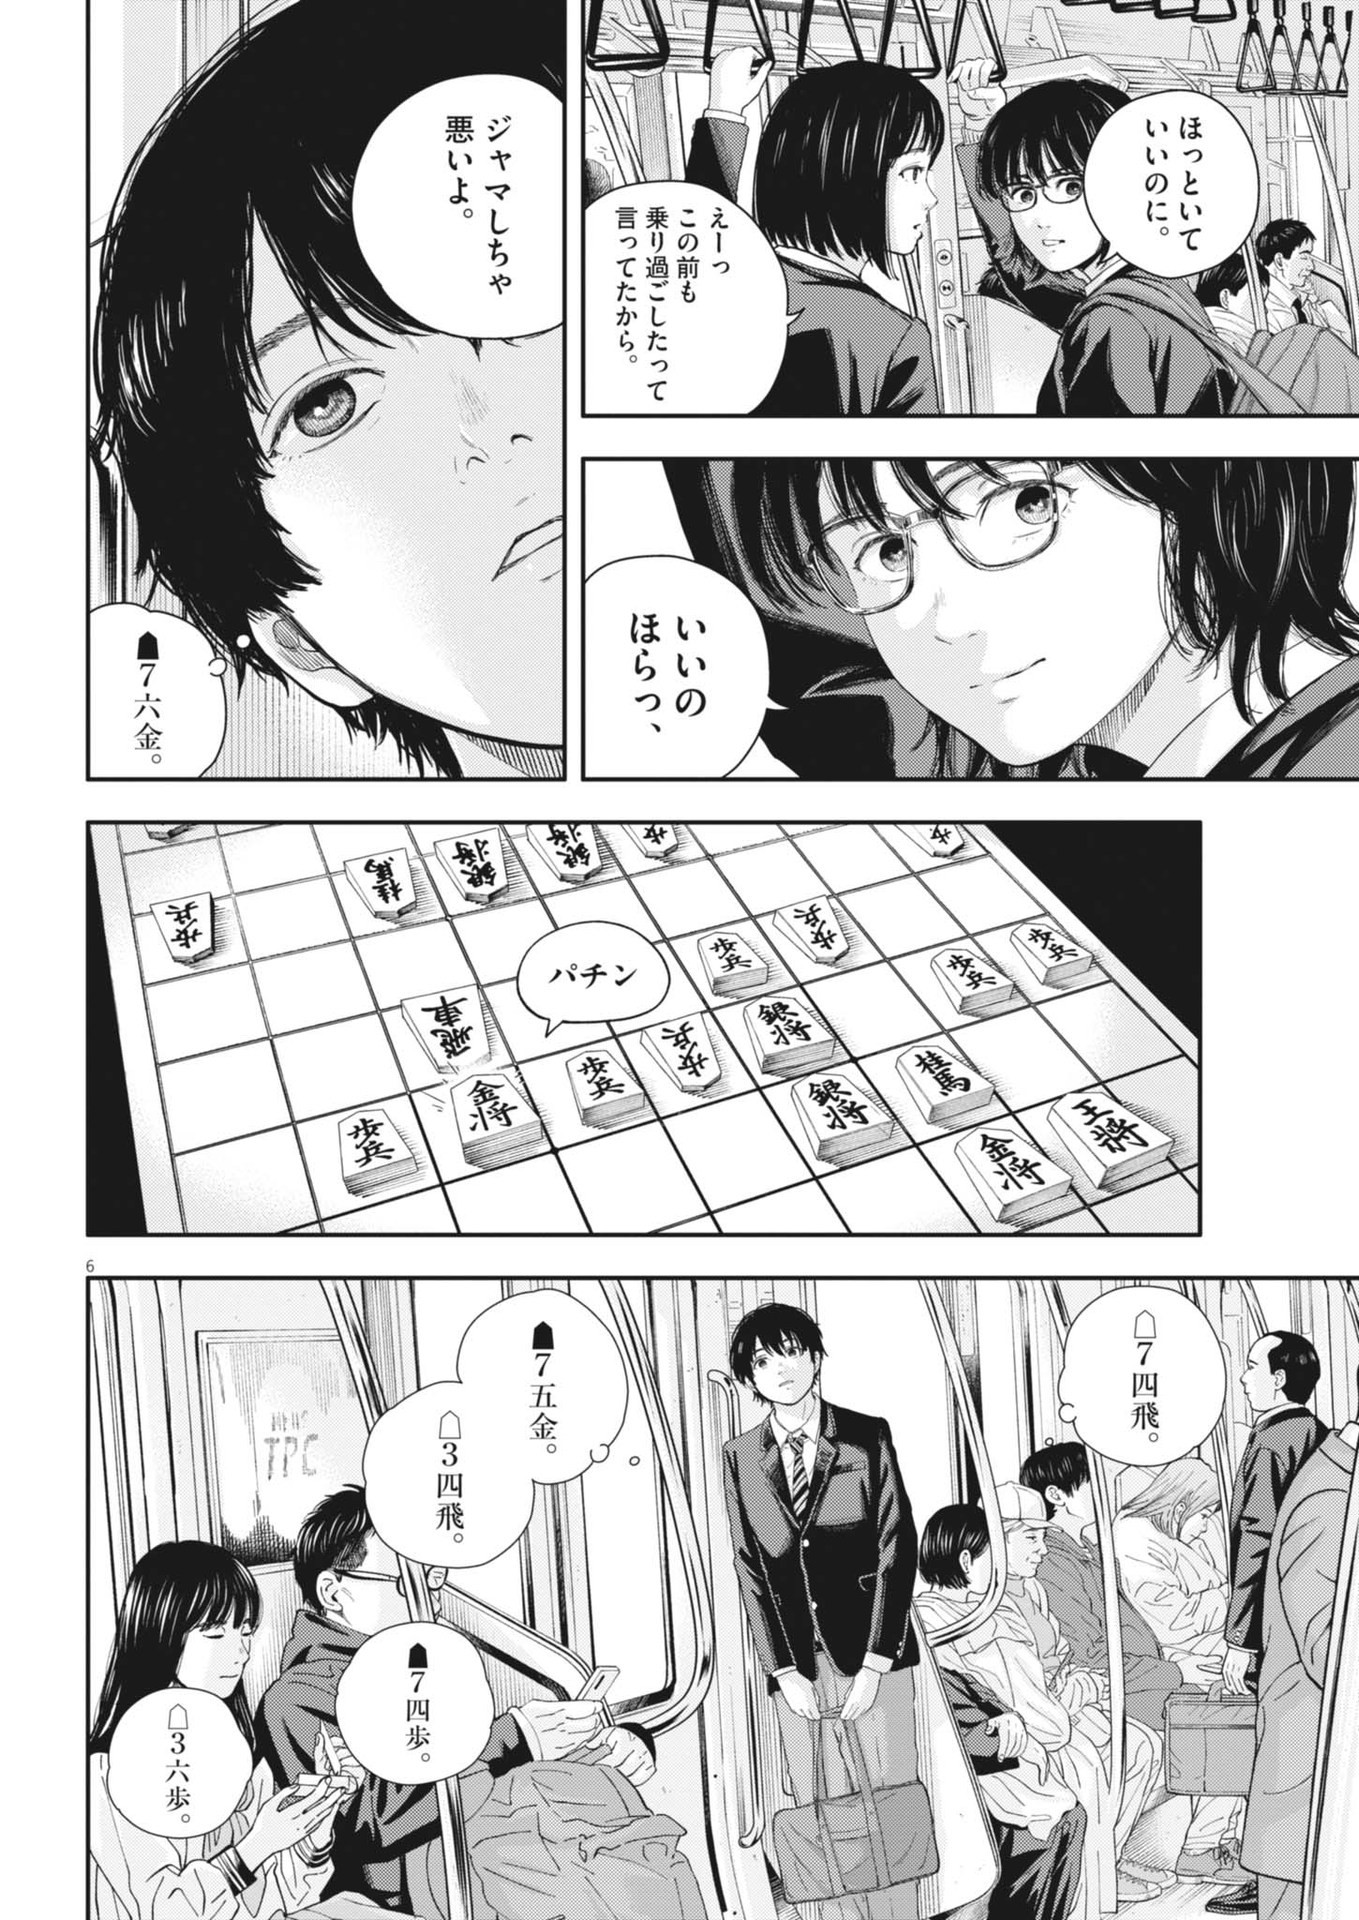 Yumenashi-sensei no Shinroshidou - Chapter 25 - Page 6